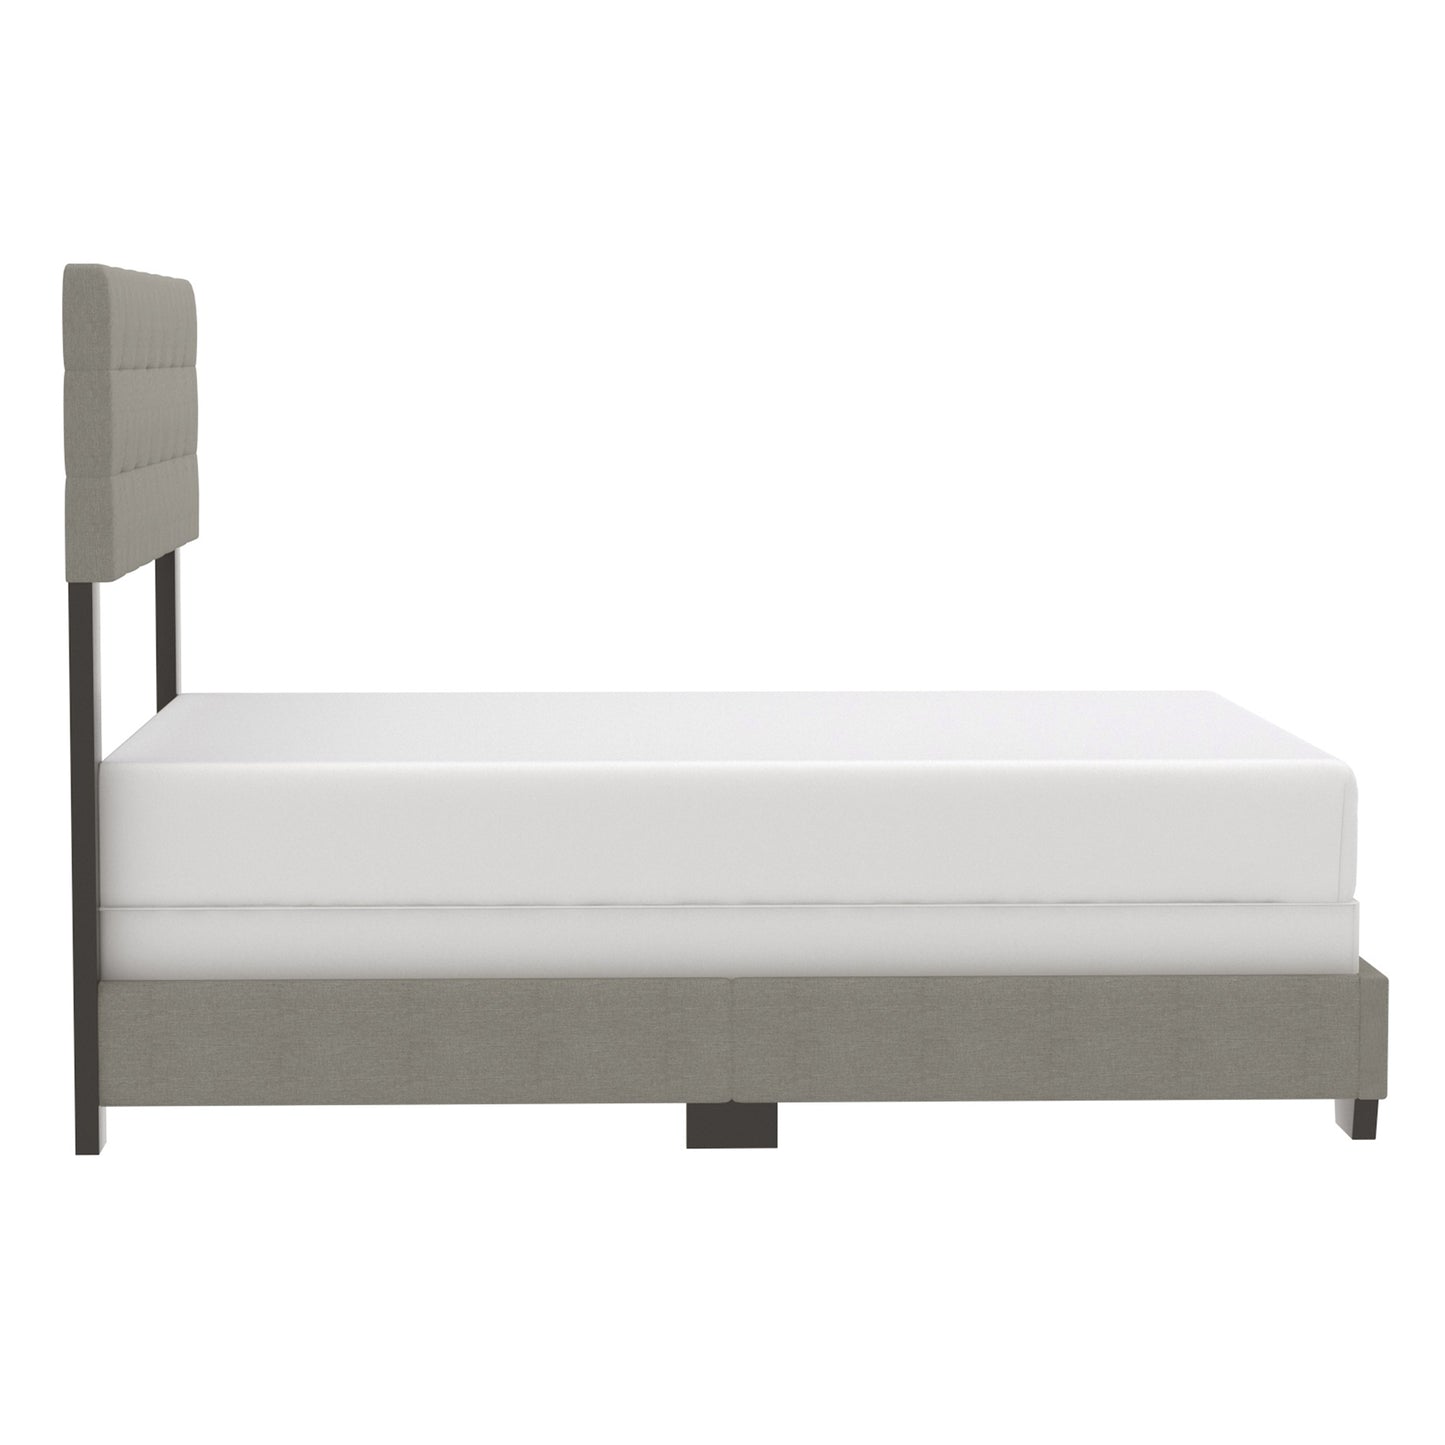 Exton 60" Queen Bed in Light Grey